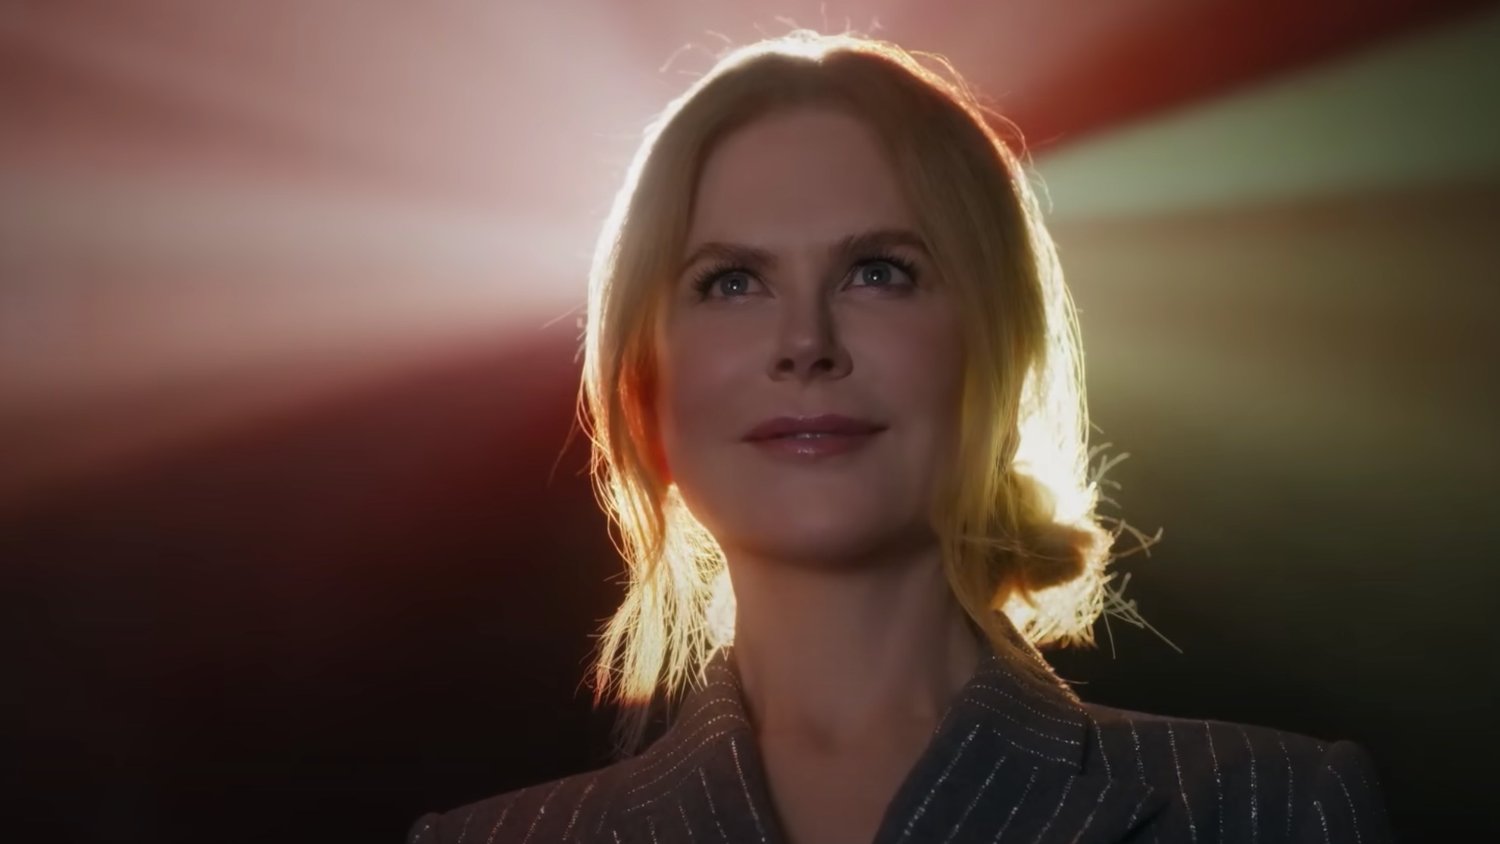 AMC Theatres annonce que trois nouvelles publicités de Nicole Kidman feront leurs débuts cette semaine